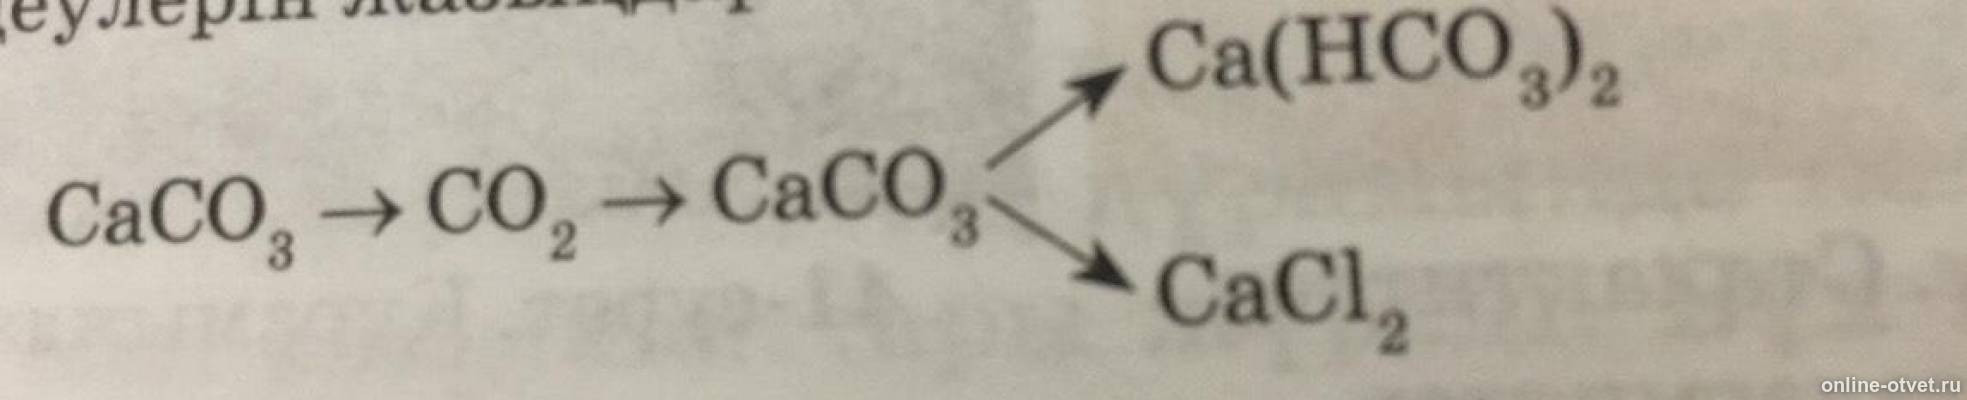 Напишите уравнение следующих реакций ca hco3 2